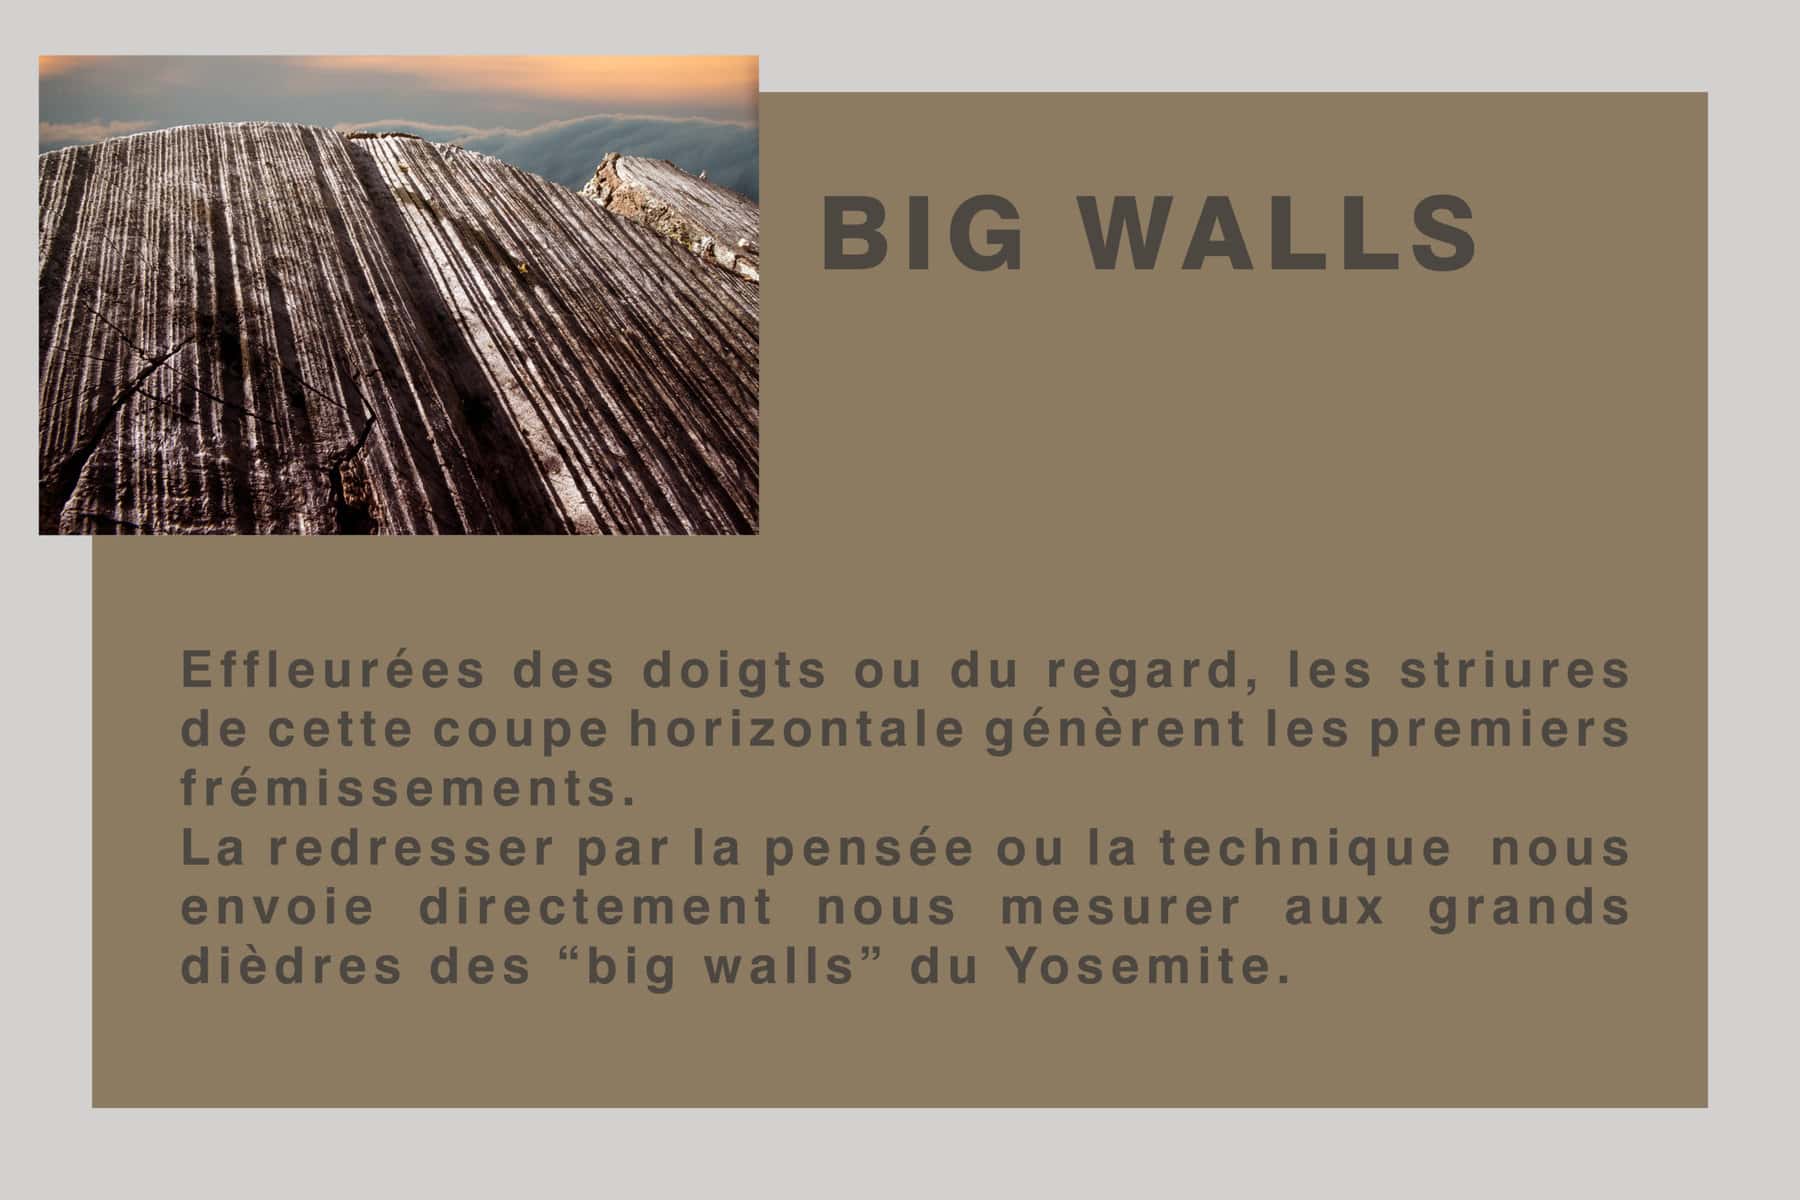 Big walls